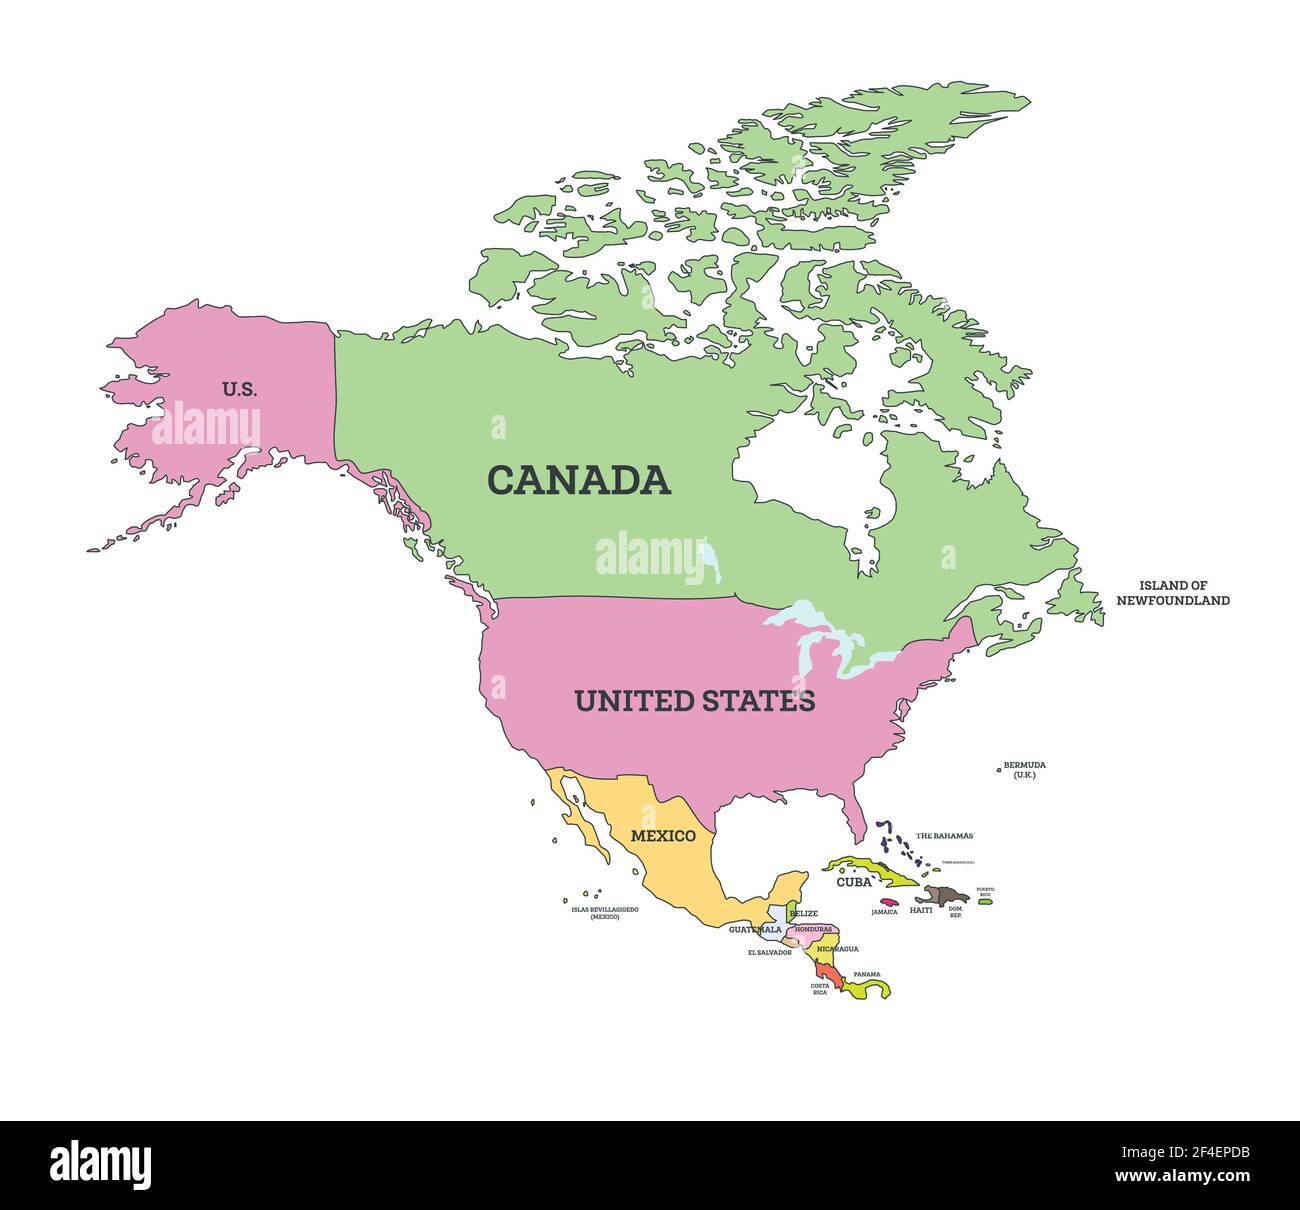 Politische Karte Für Nordamerika. Vektorgrafik. Karte mit Namen der Länder, die auf Weiß isoliert sind. Stock Vektor